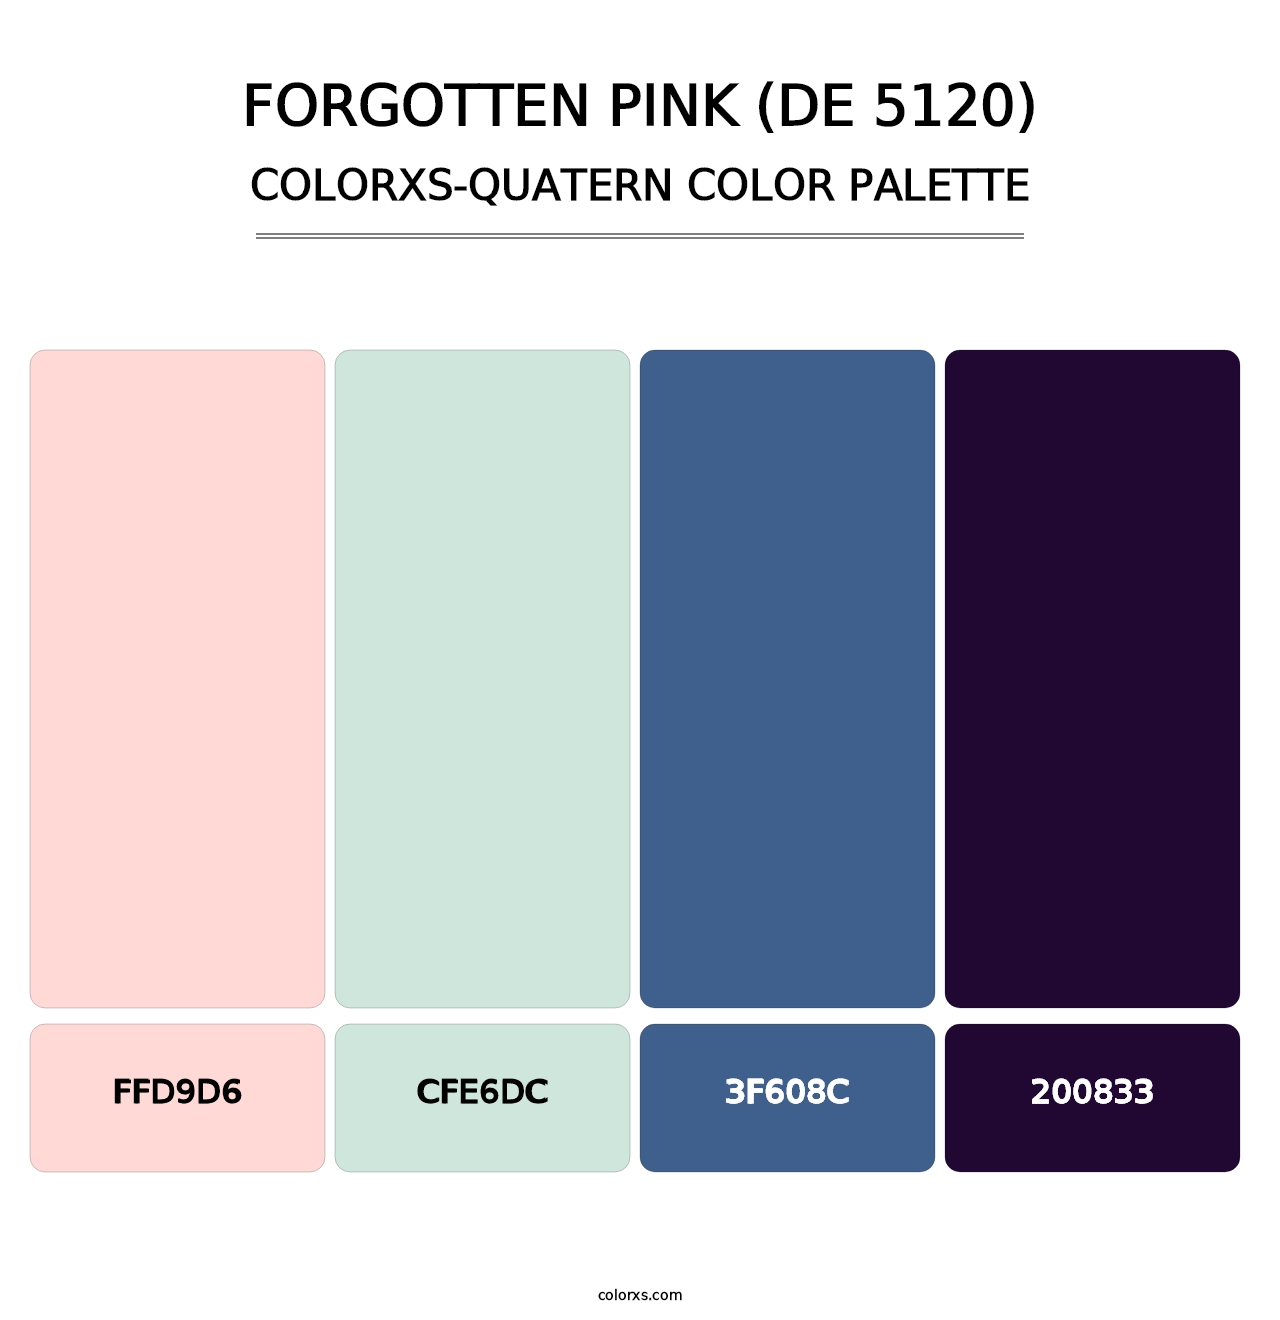 Forgotten Pink (DE 5120) - Colorxs Quatern Palette